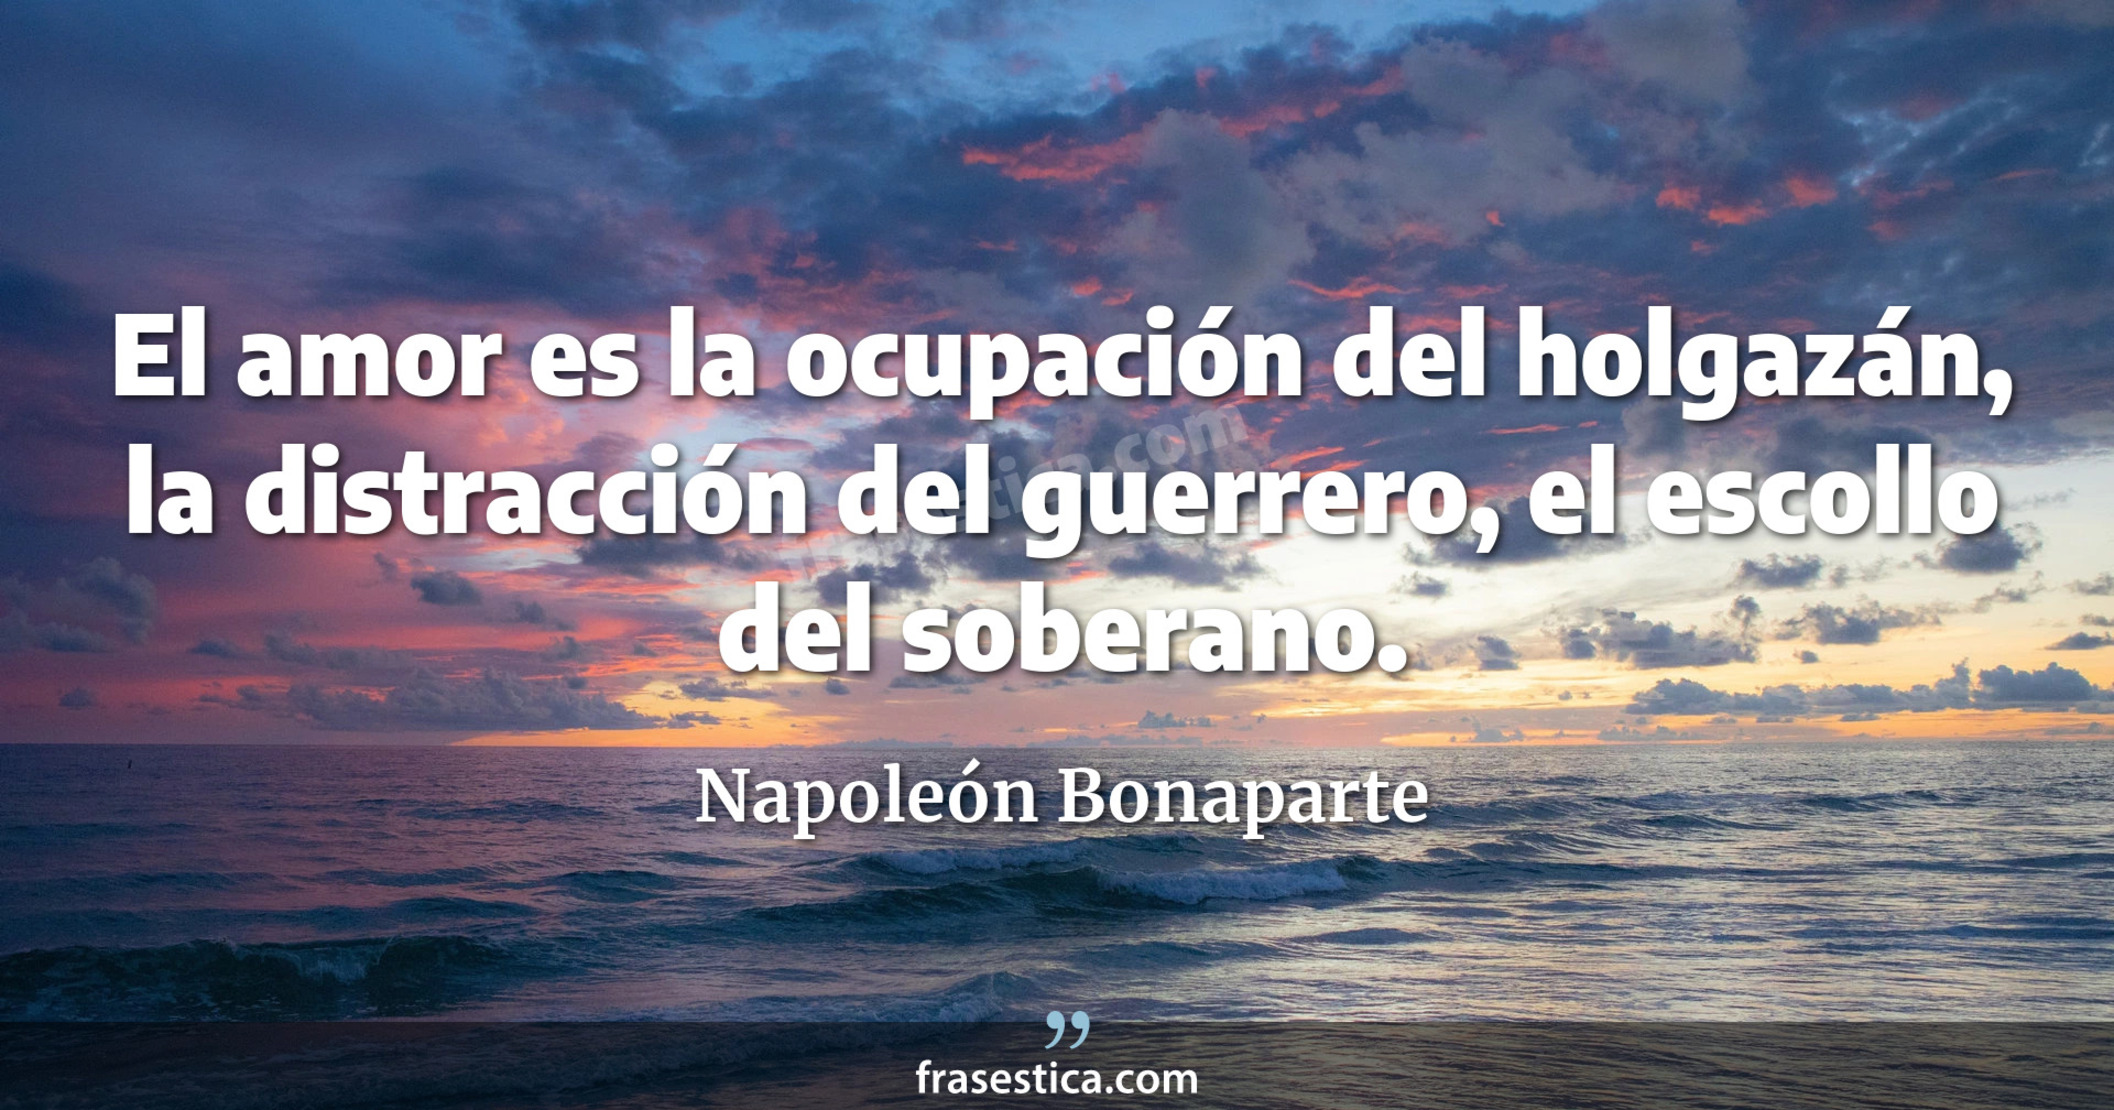 El amor es la ocupación del holgazán, la distracción del guerrero, el escollo del soberano. - Napoleón Bonaparte